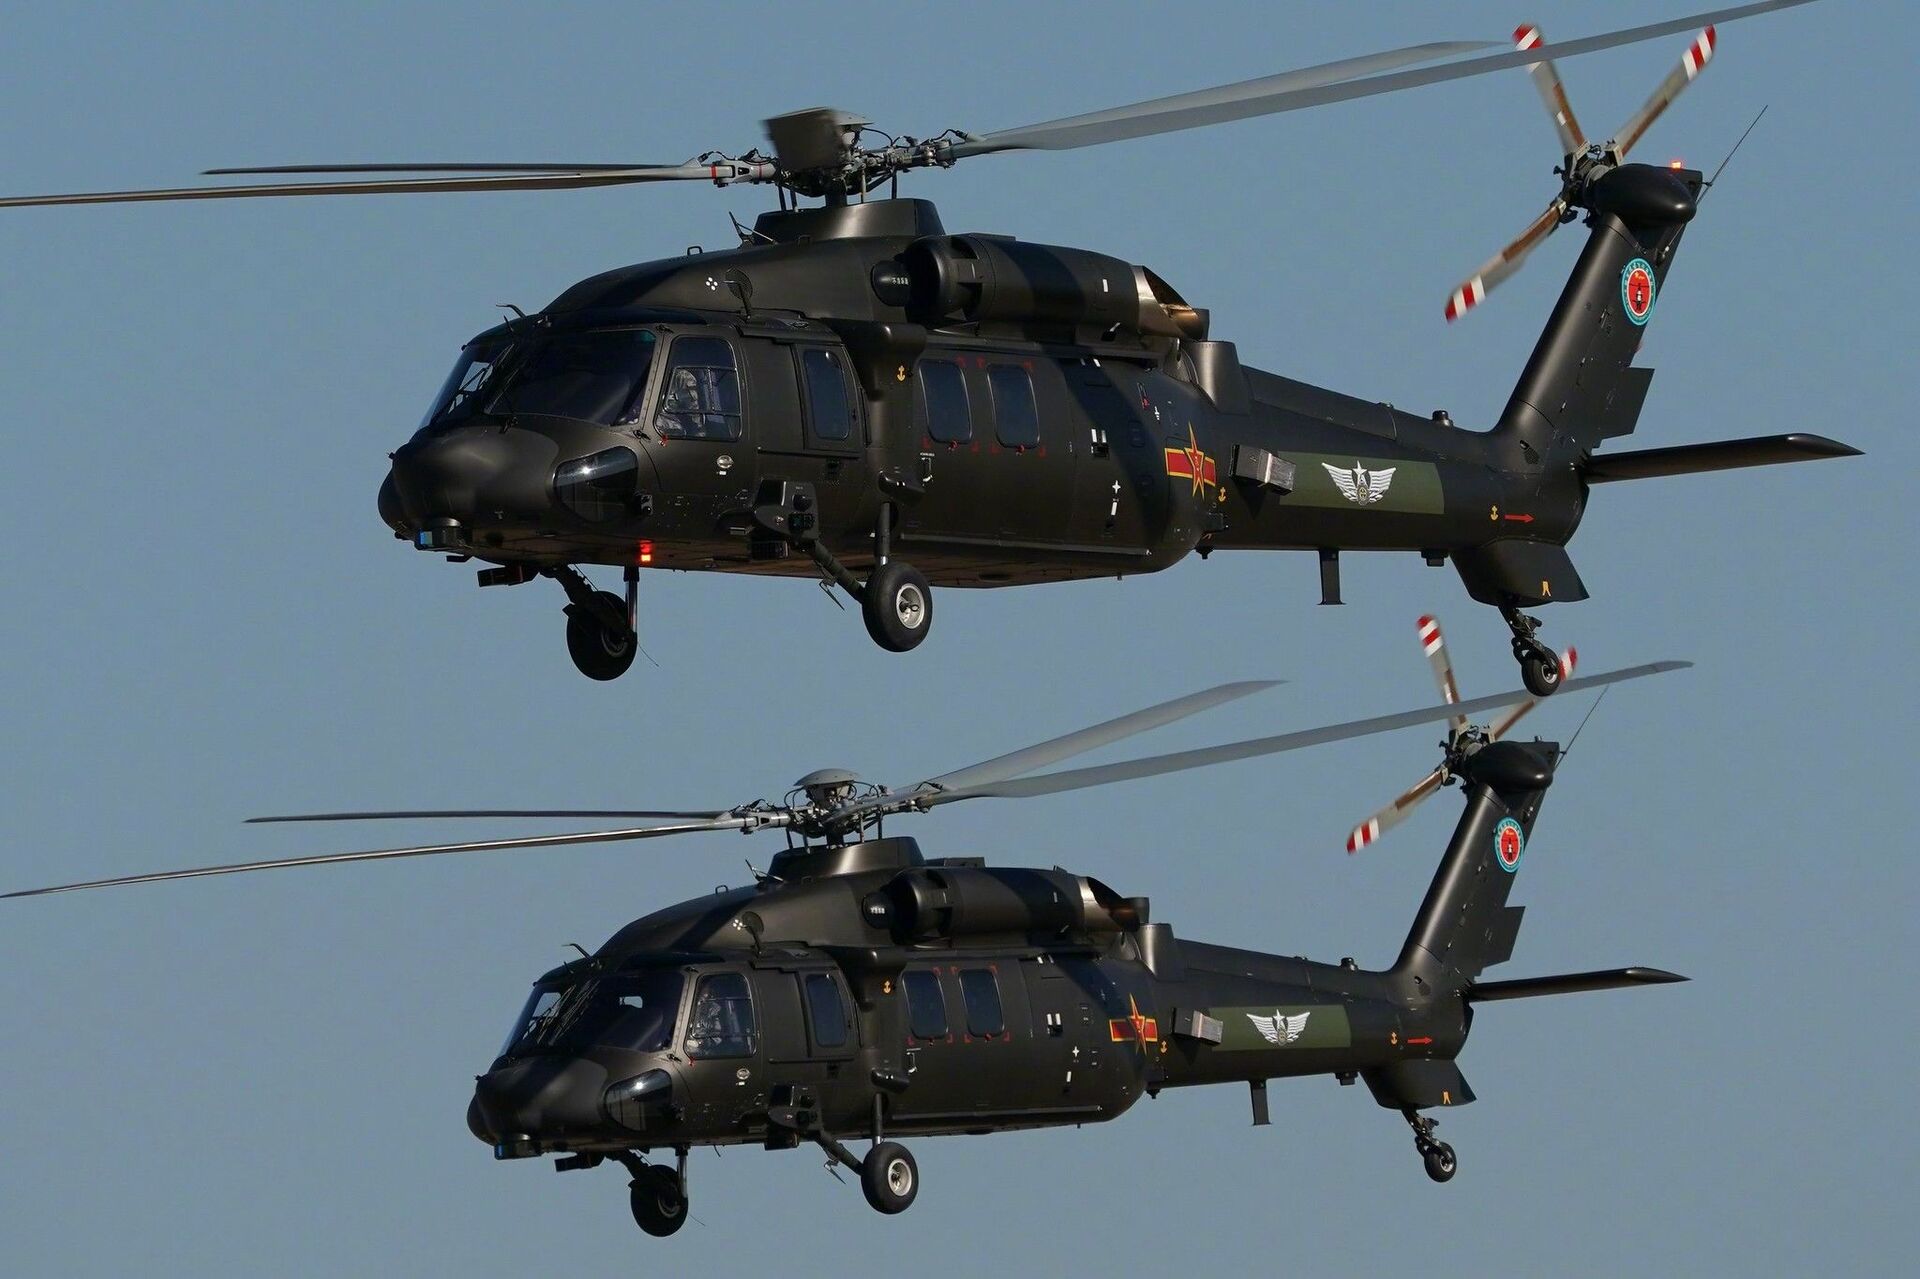 Alta velocidade e furtividade: China anuncia plano para novo helicóptero com tecnologias de ponta - Sputnik Brasil, 1920, 29.06.2021